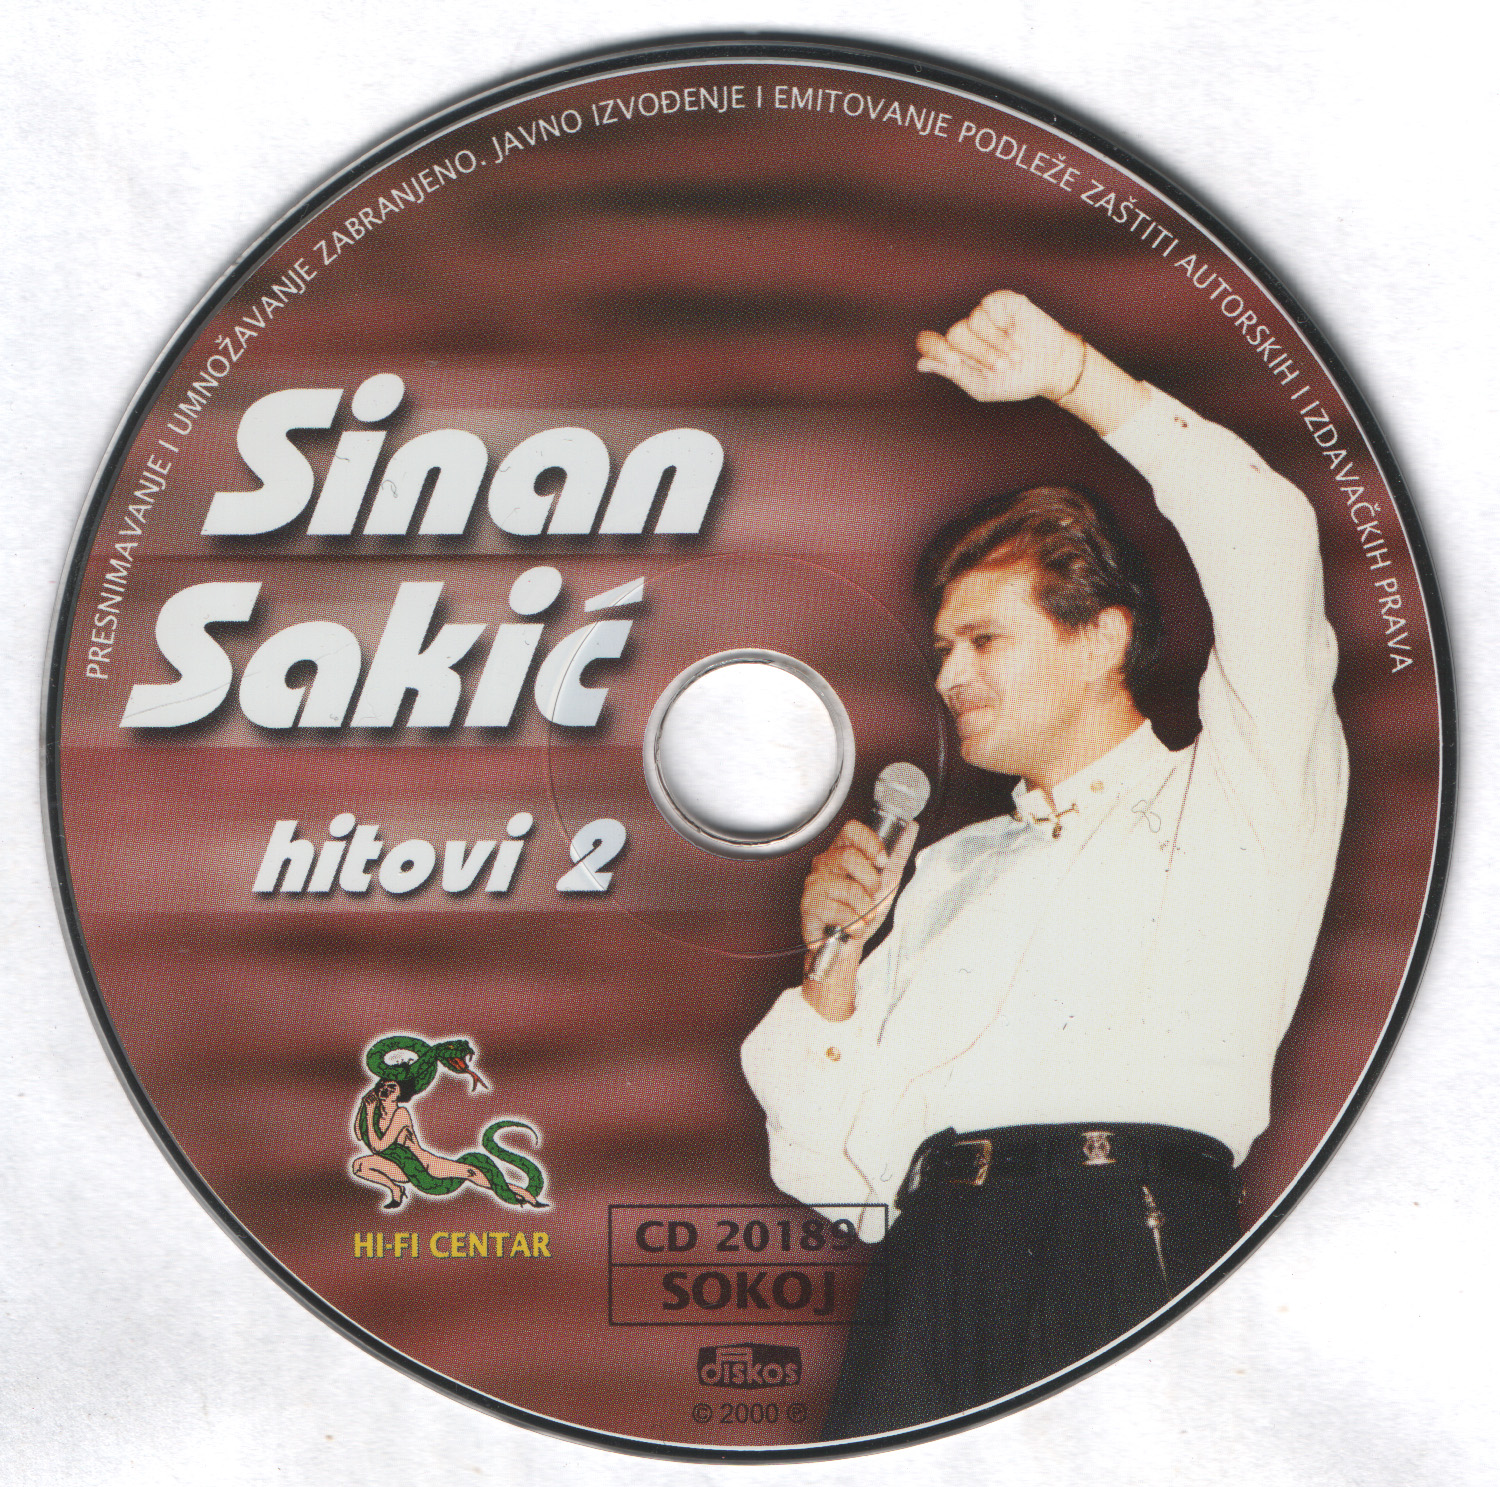 Sinan Sakic 2000 CD